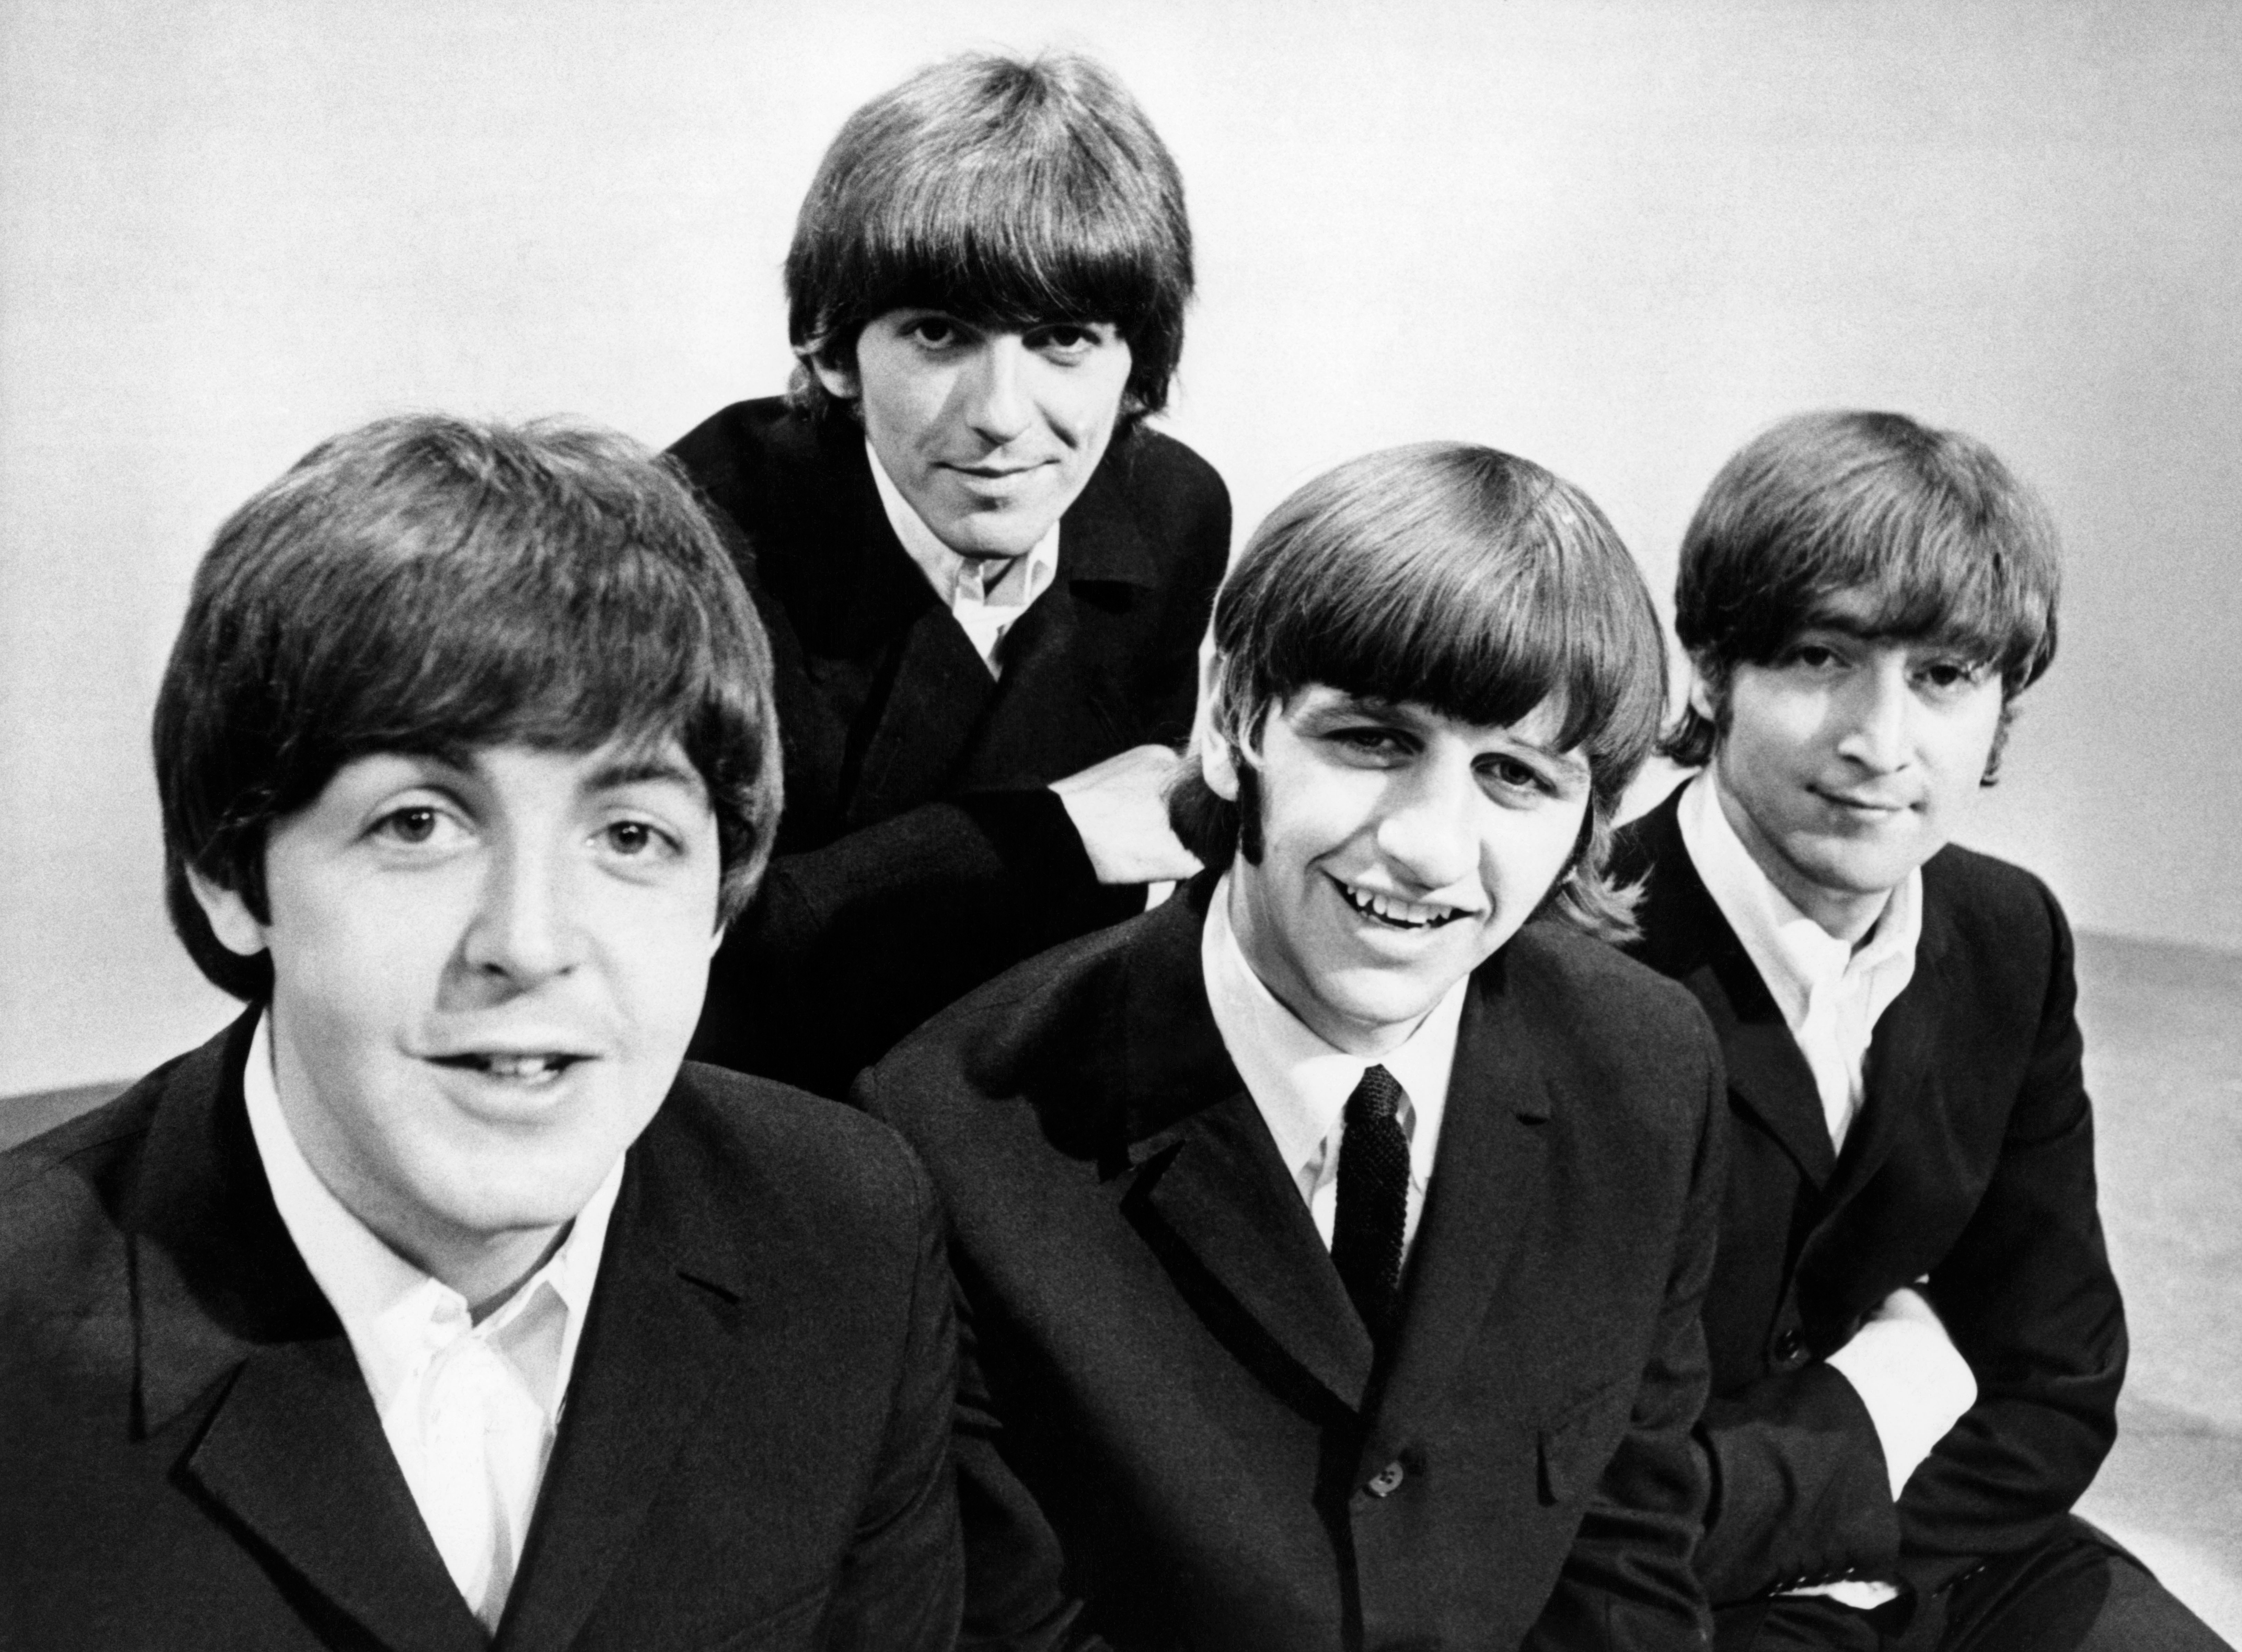 Imagen de archivo de los componentes del grupo The Beatles, Paul McCartney (bajista), George Harrison (guitarra), Ringo Starr (batería), y John Lennon (guitarra), durante un posado gráfico en los Estudios de televisión de la BBC en Londres. EFE.
